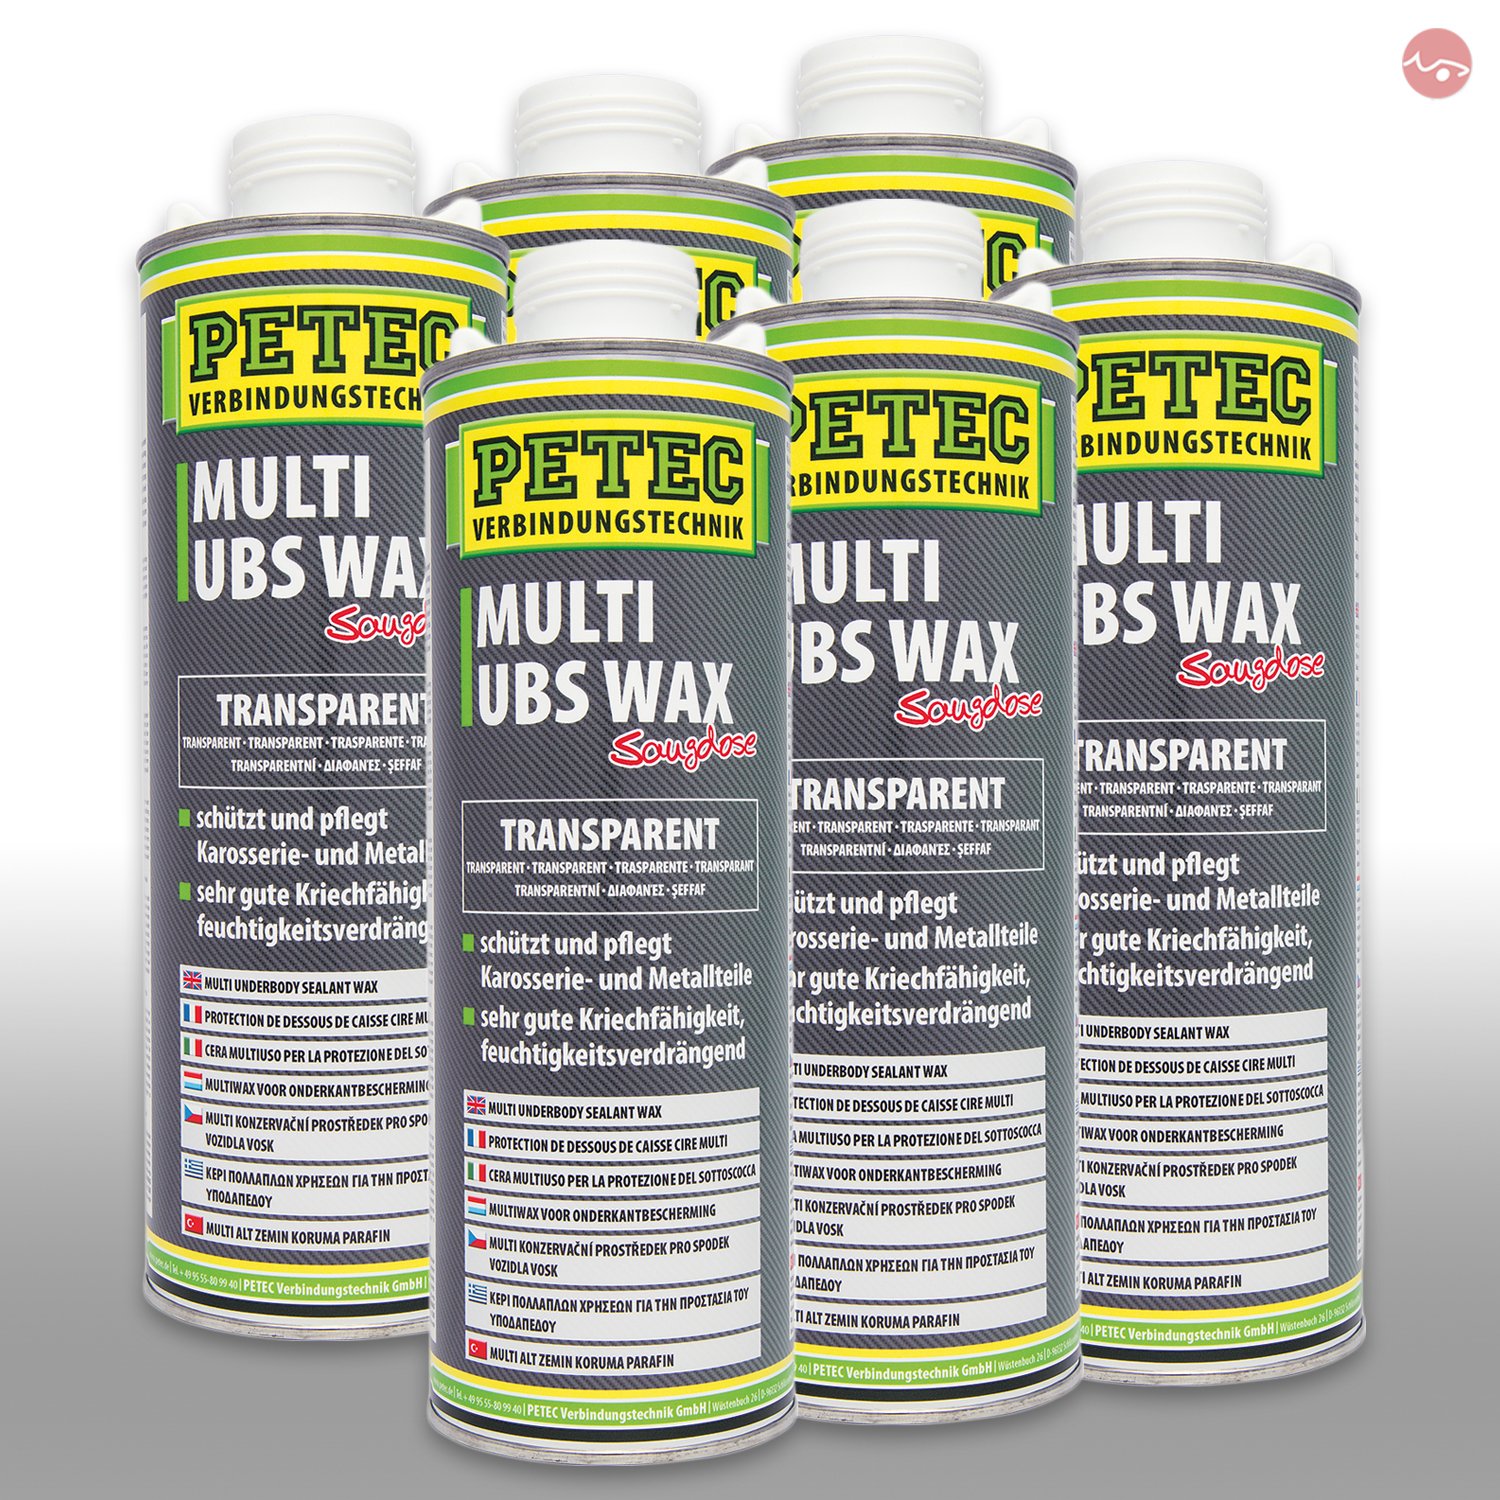 Petec_bundle 6X PETEC Multi UBS Wax Kautschukbasis Spray Dose TRANSPARENT 1.000 ML 73410